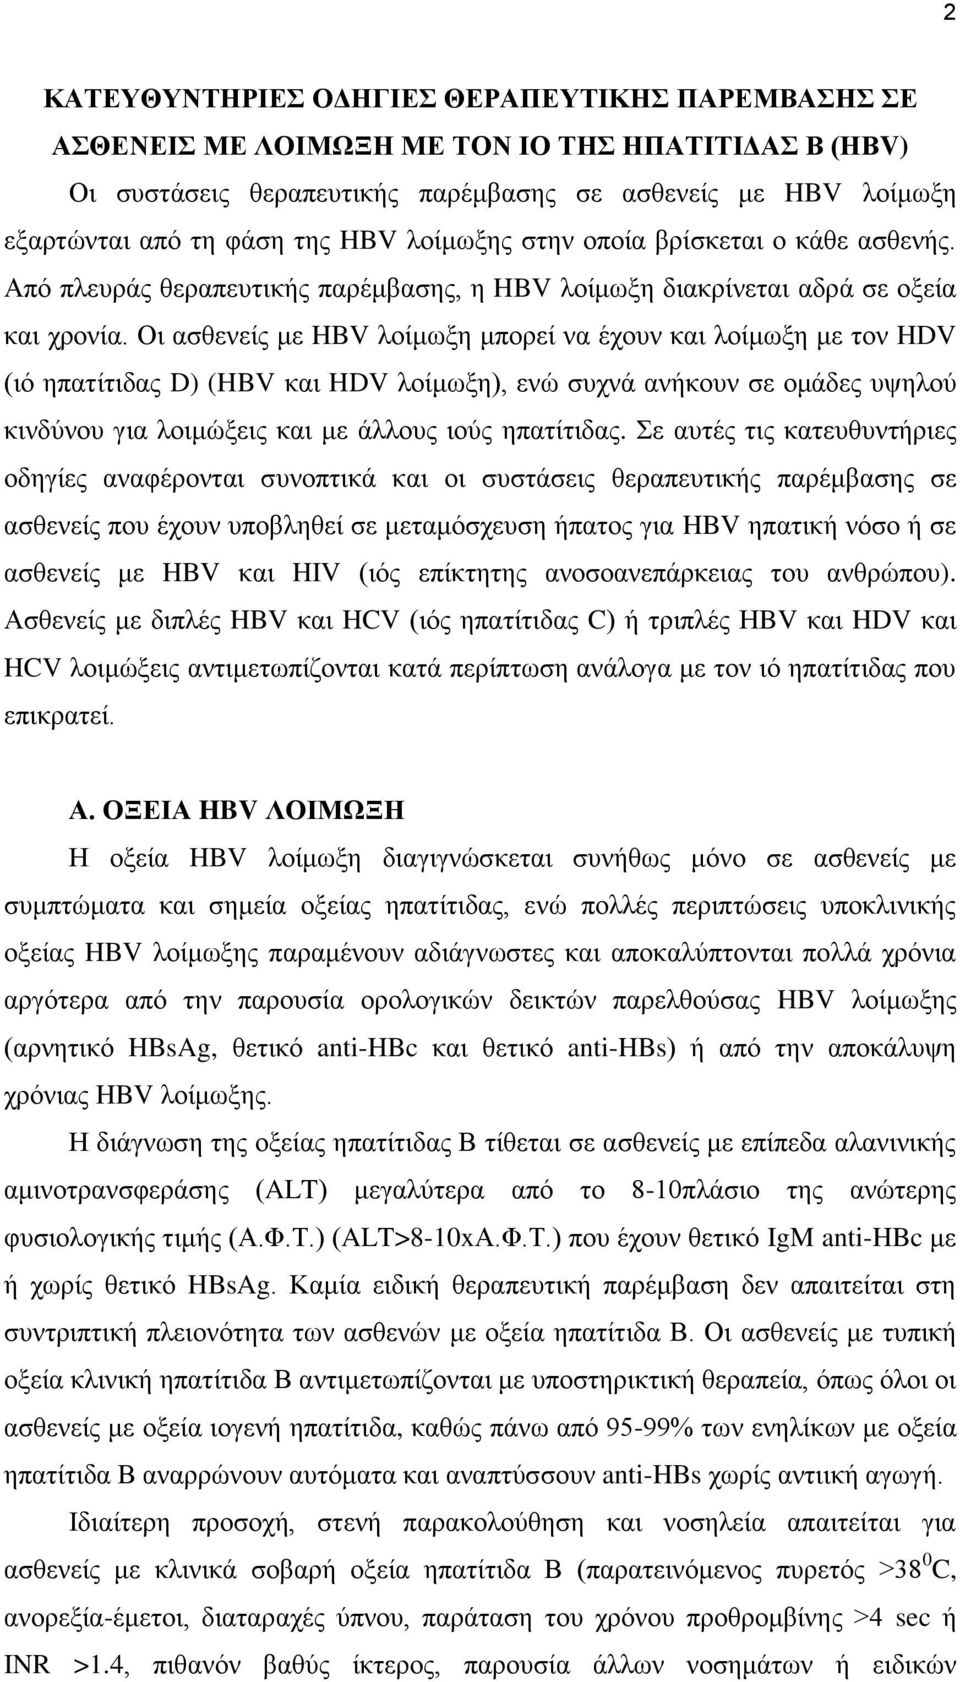 Οη αζζελείο κε HBV ινίκσμε κπνξεί λα έρνπλ θαη ινίκσμε κε ηνλ HDV (ηφ επαηίηηδαο D) (HBV θαη HDV ινίκσμε), ελψ ζπρλά αλήθνπλ ζε νκάδεο πςεινχ θηλδχλνπ γηα ινηκψμεηο θαη κε άιινπο ηνχο επαηίηηδαο.